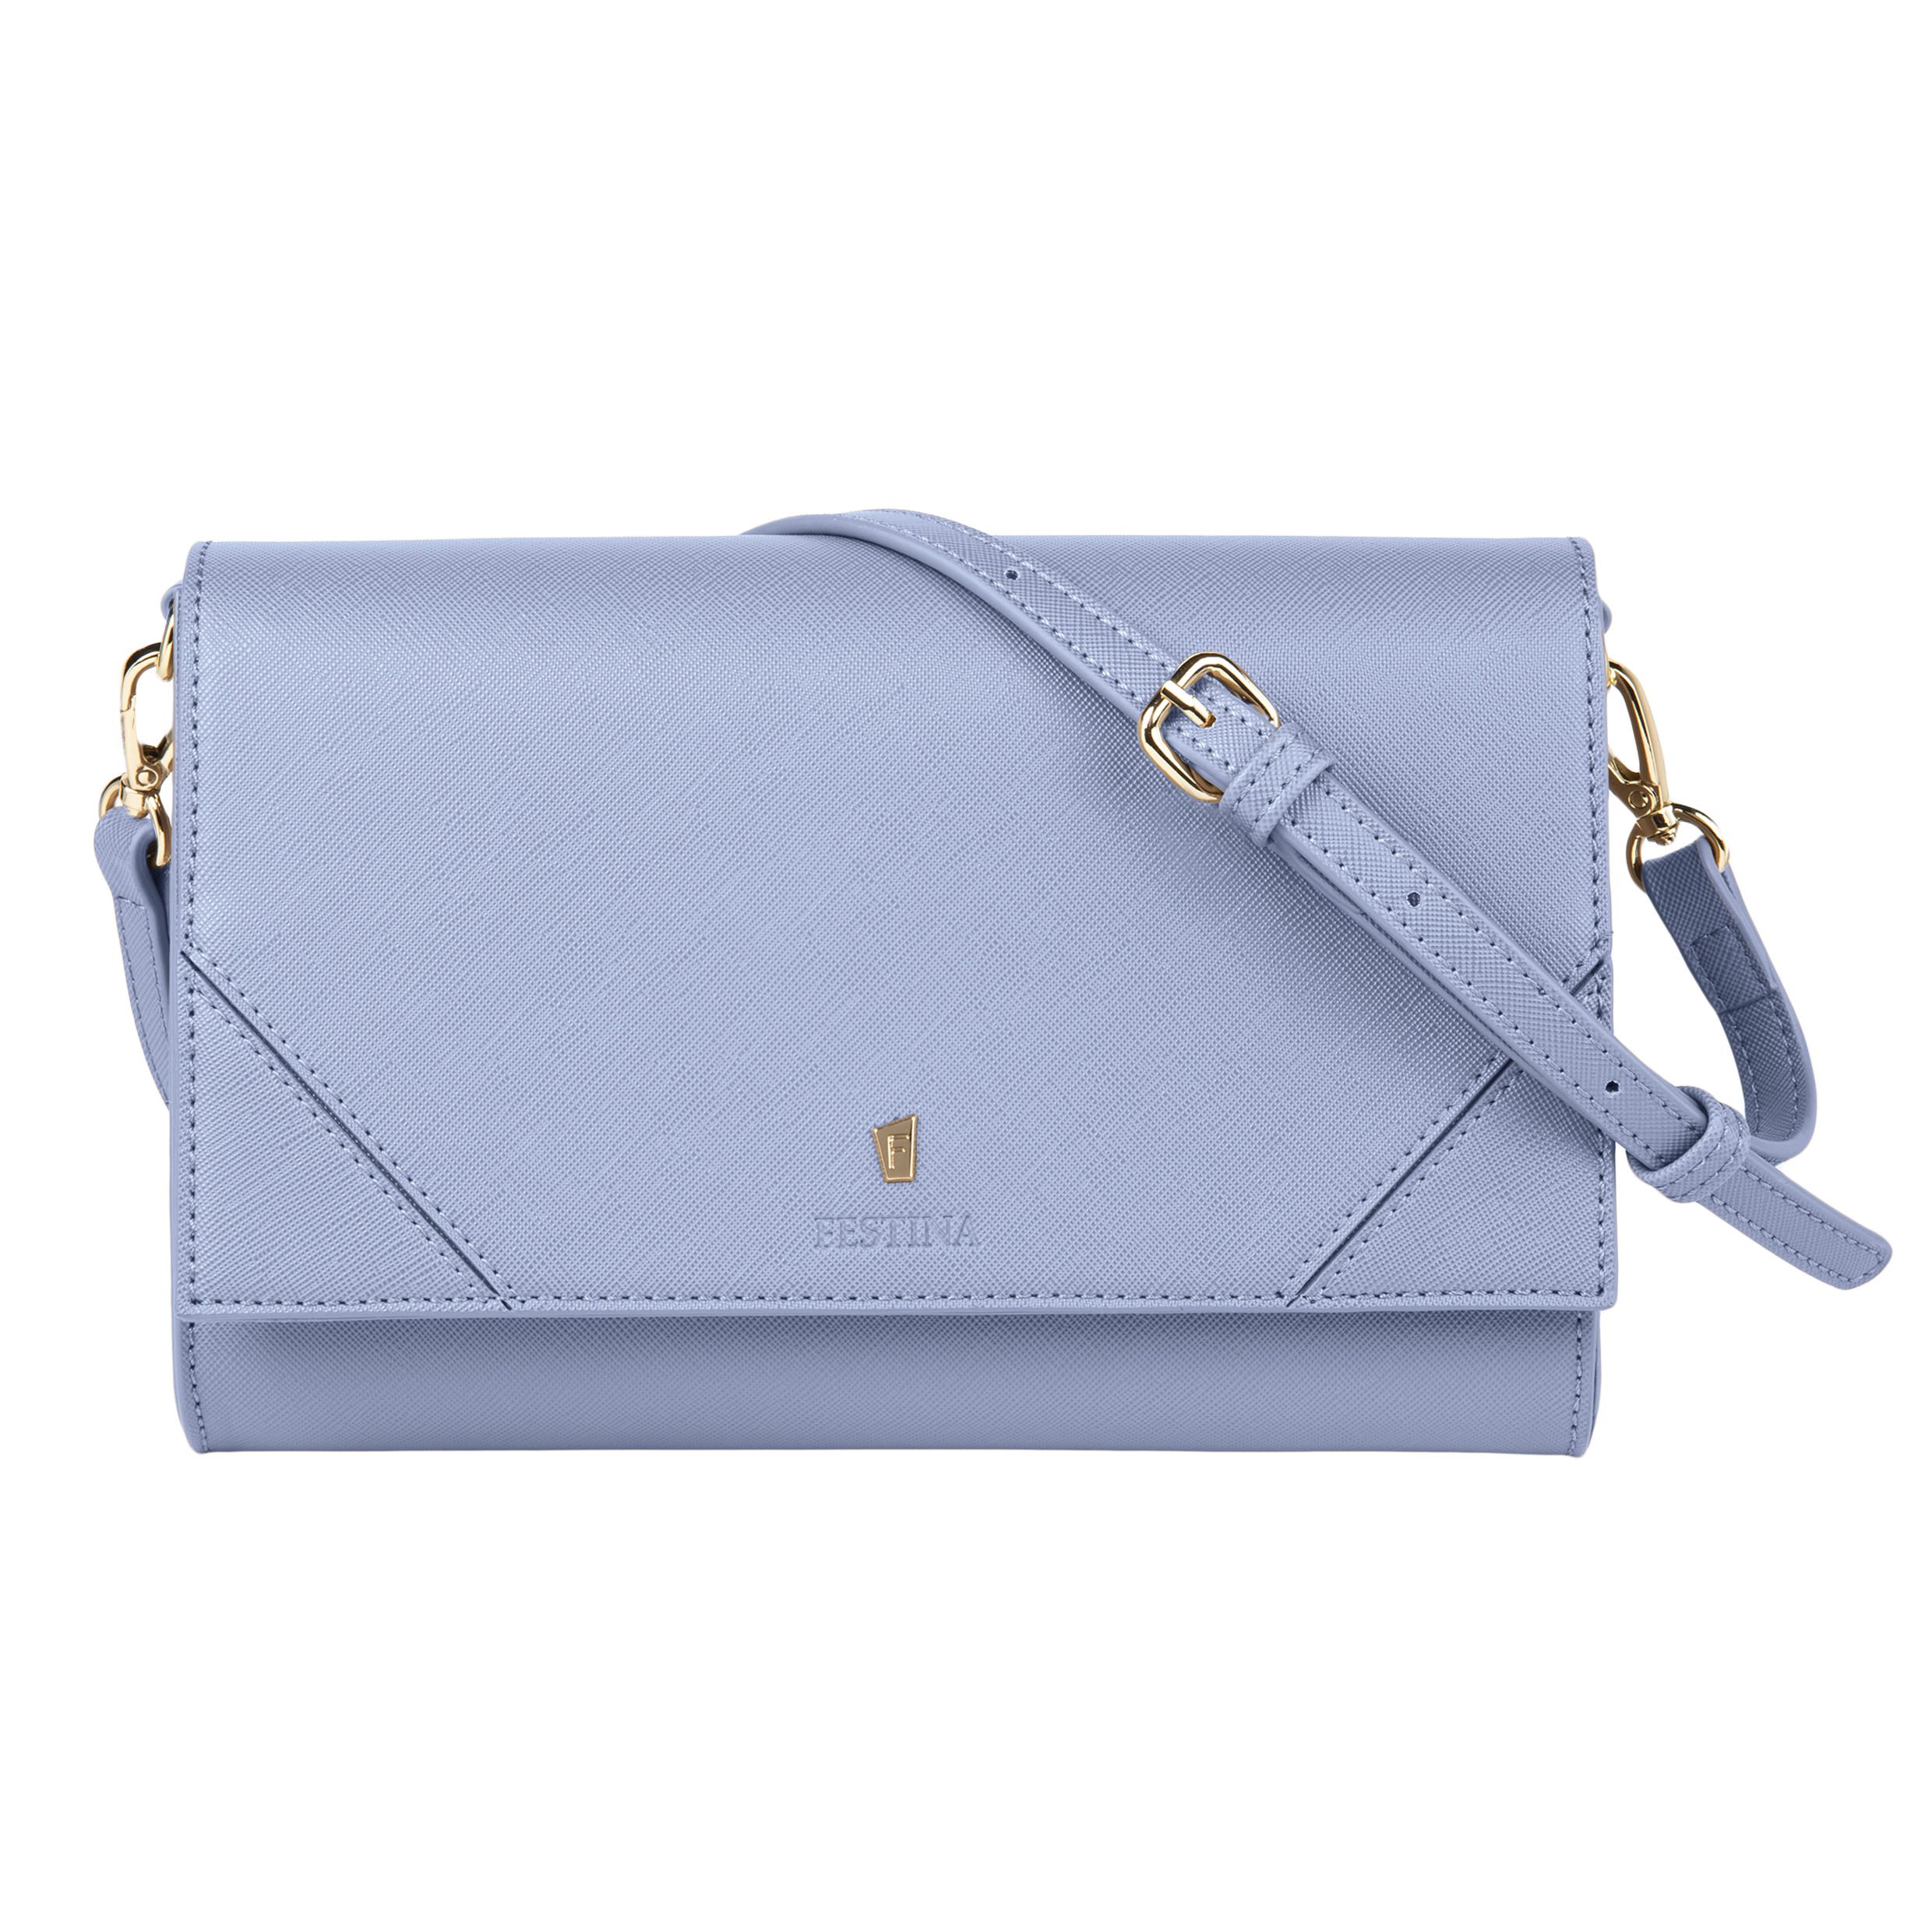 Дамская сумочка Mademoiselle Light Blue